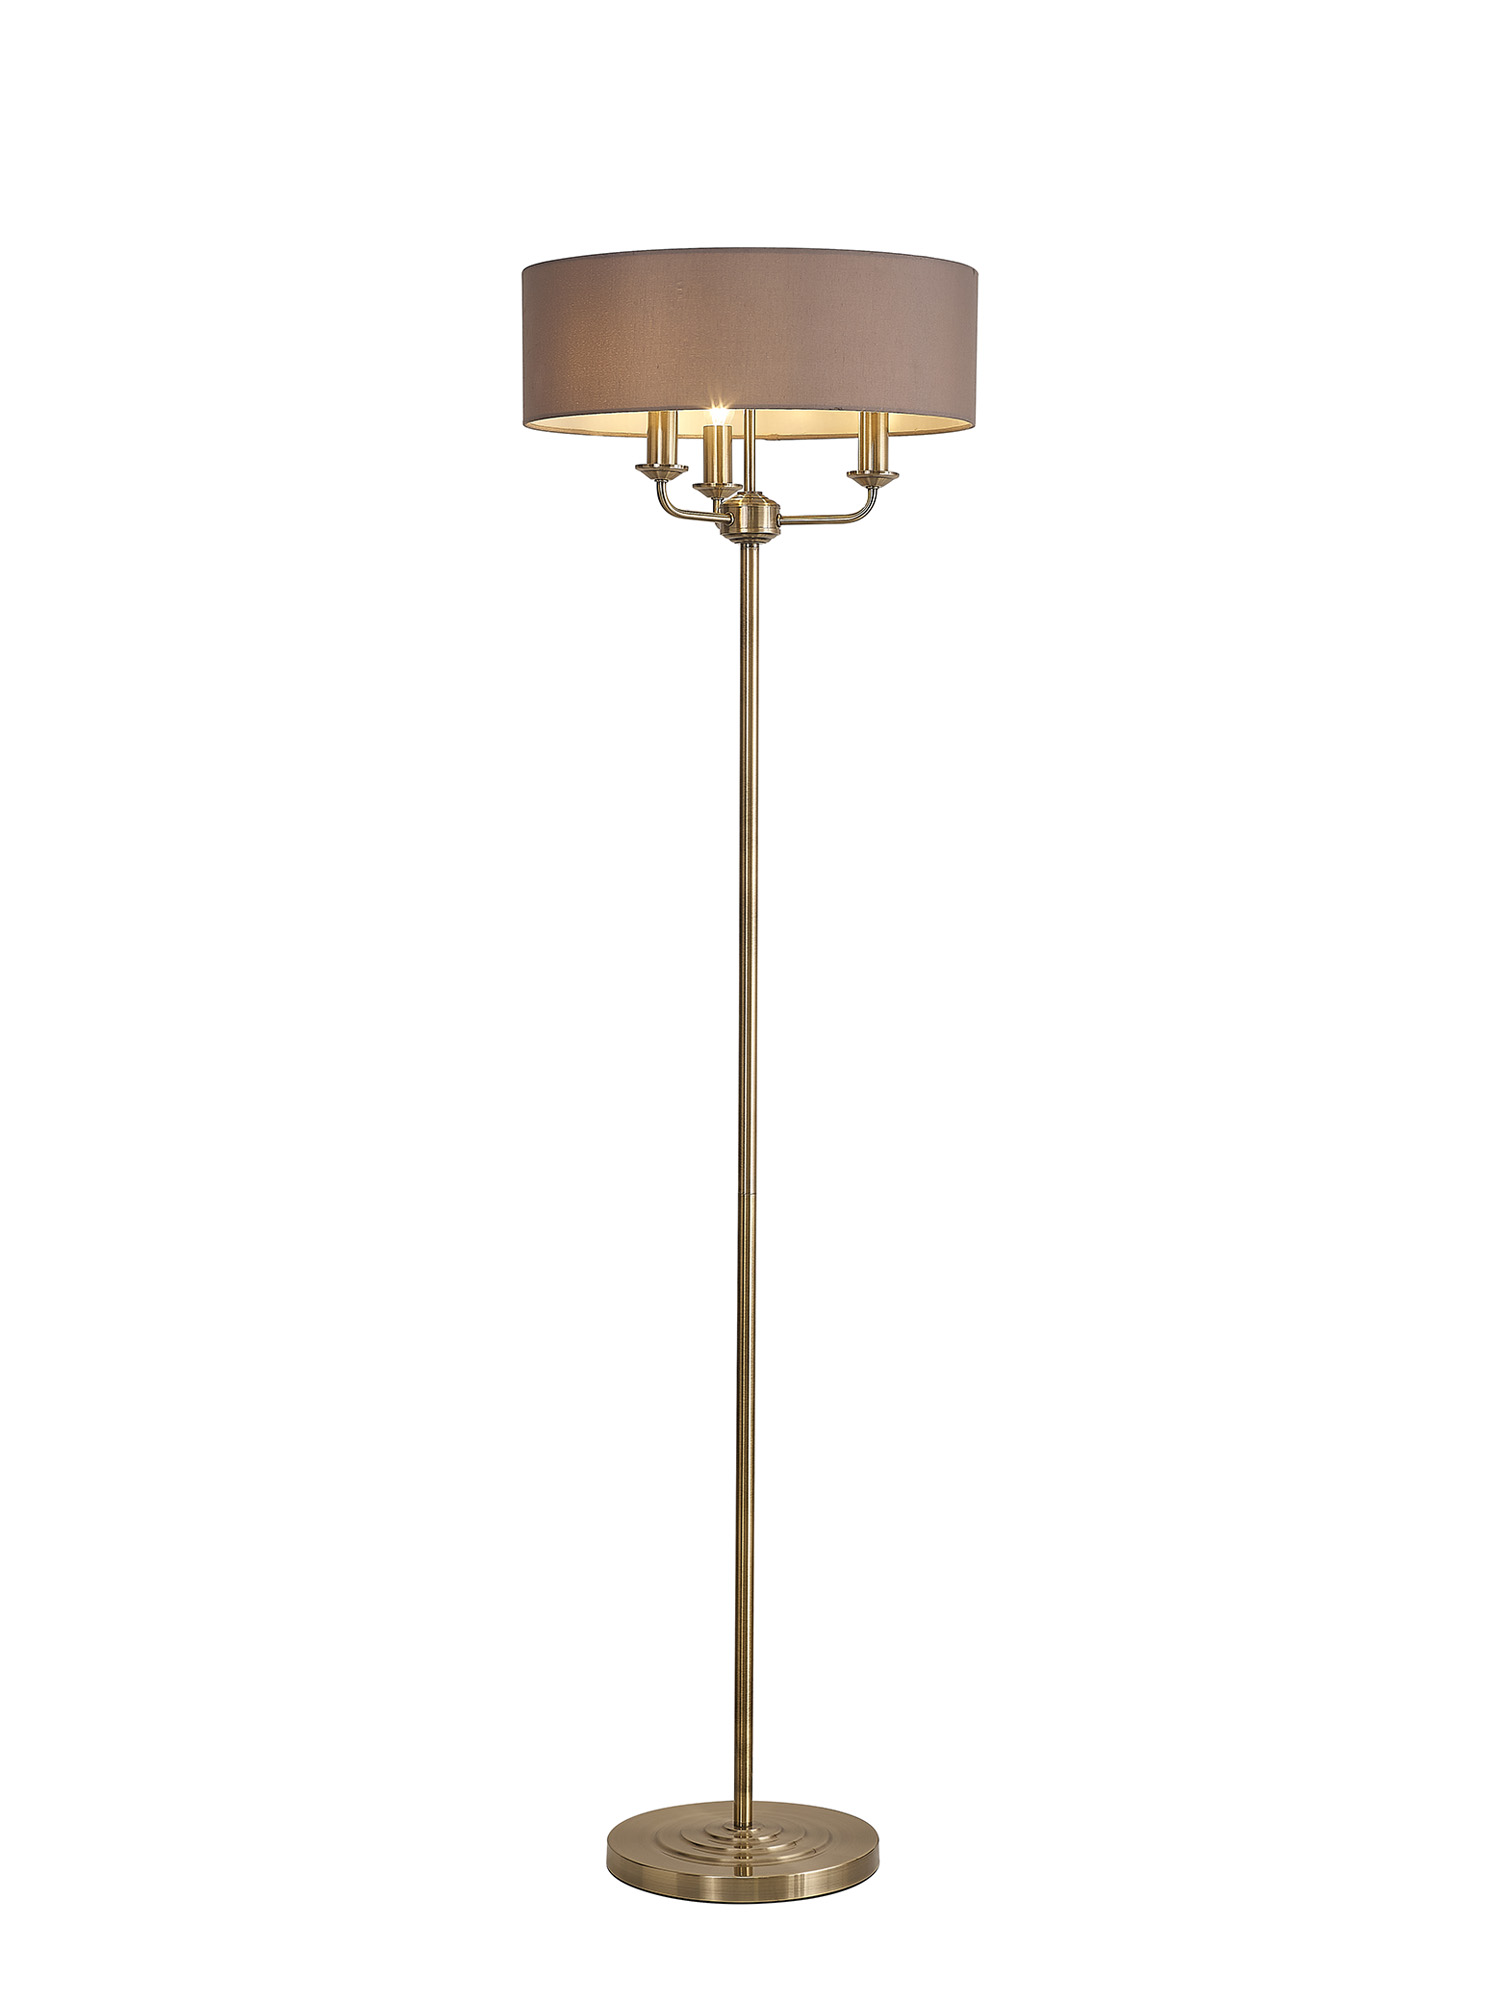 DK0902  Banyan 45cm 3 Light Floor Lamp Antique Brass, Grey